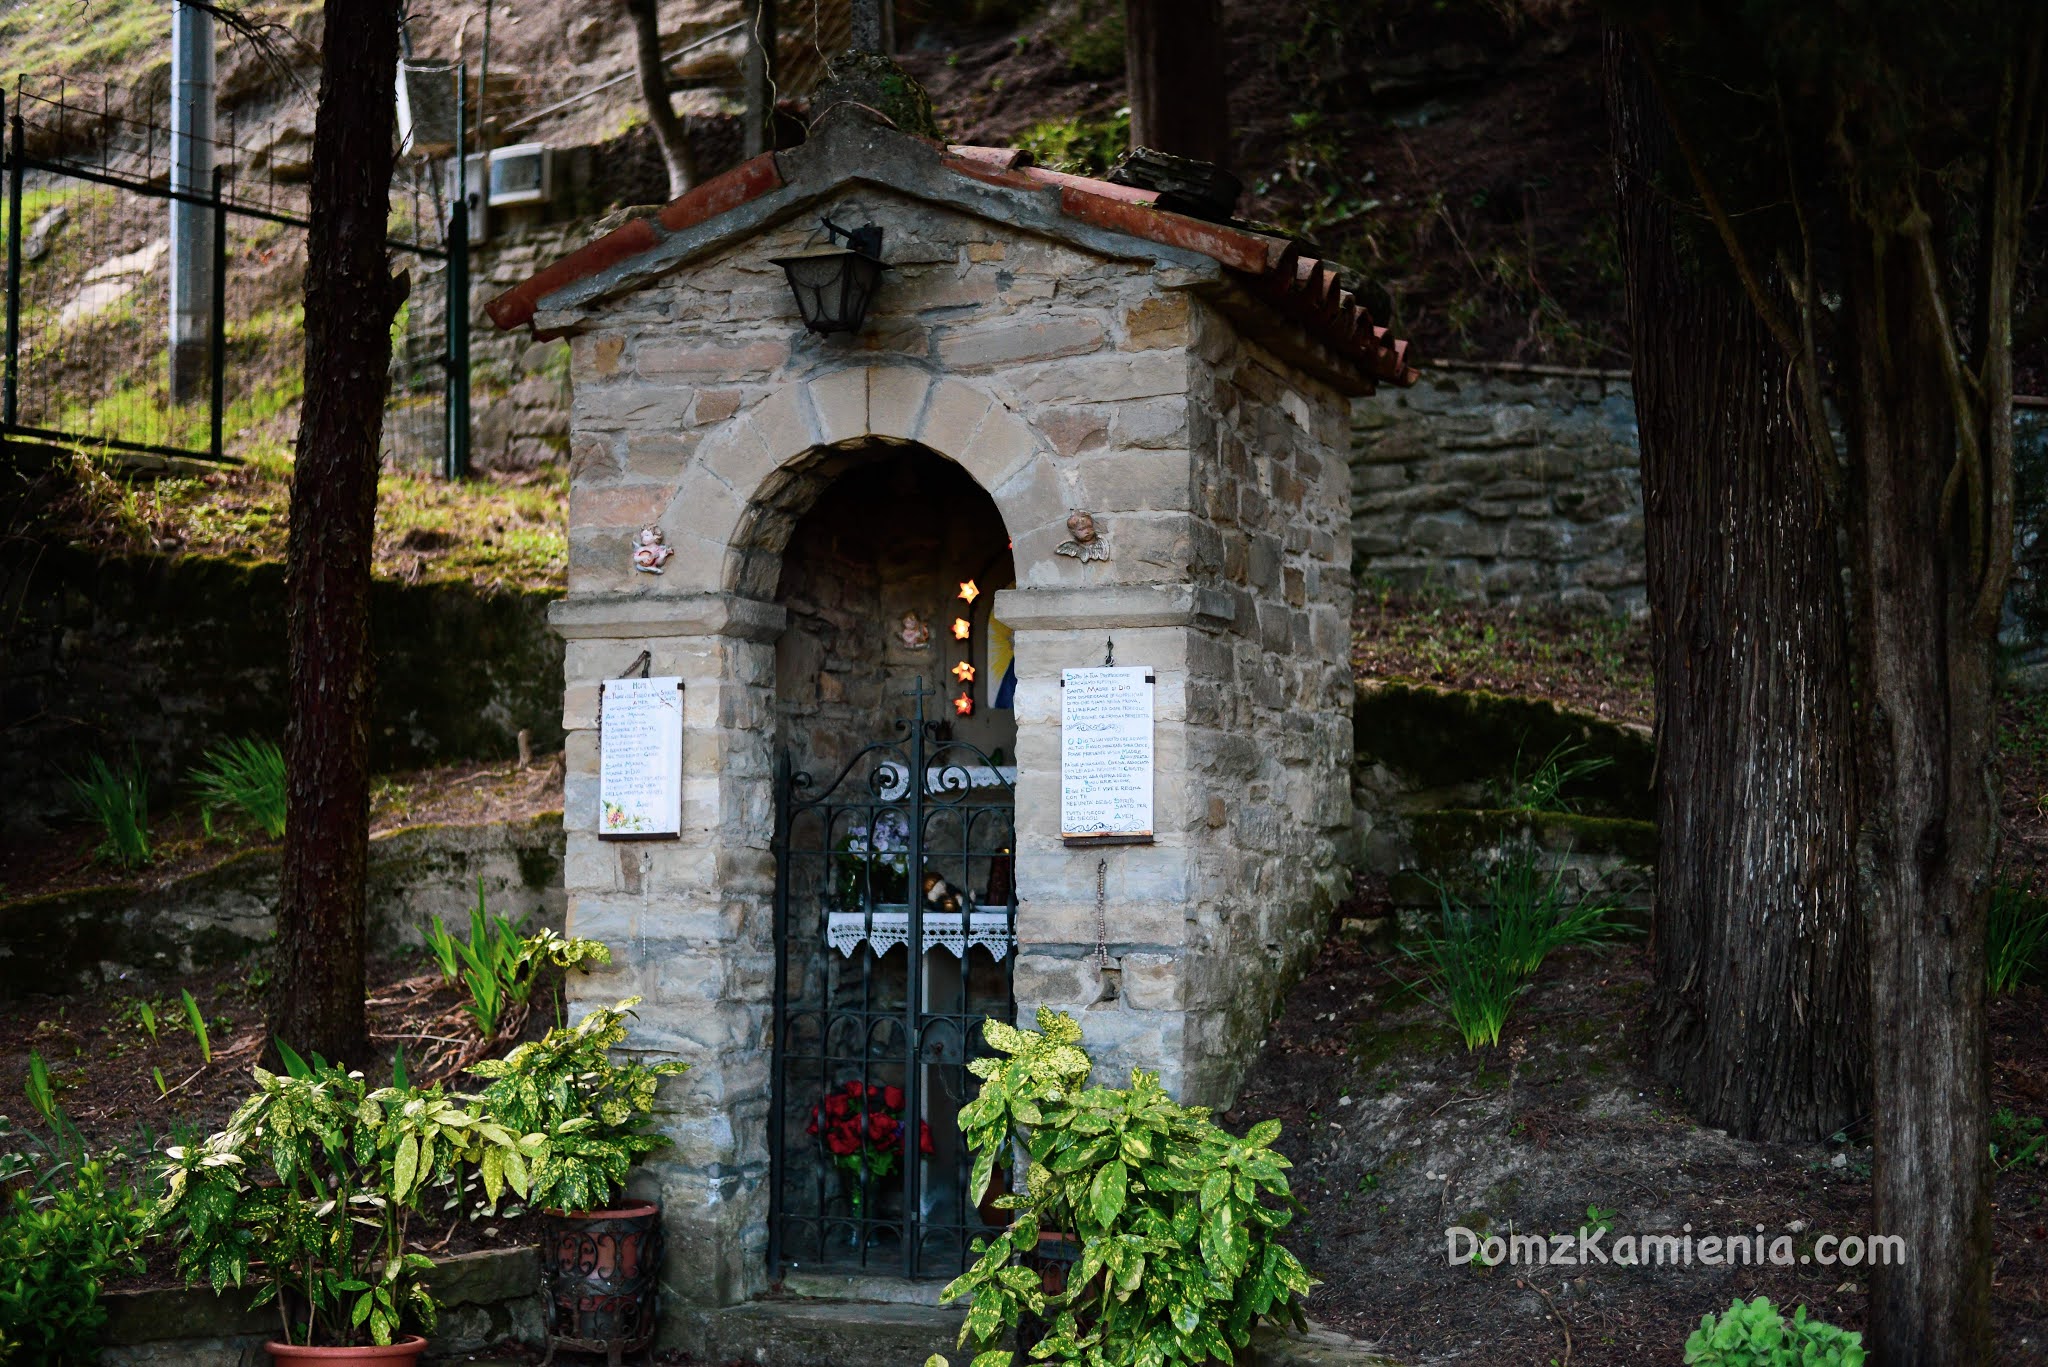 Popolano - Dom z Kamienia blog, Toskania nieznana